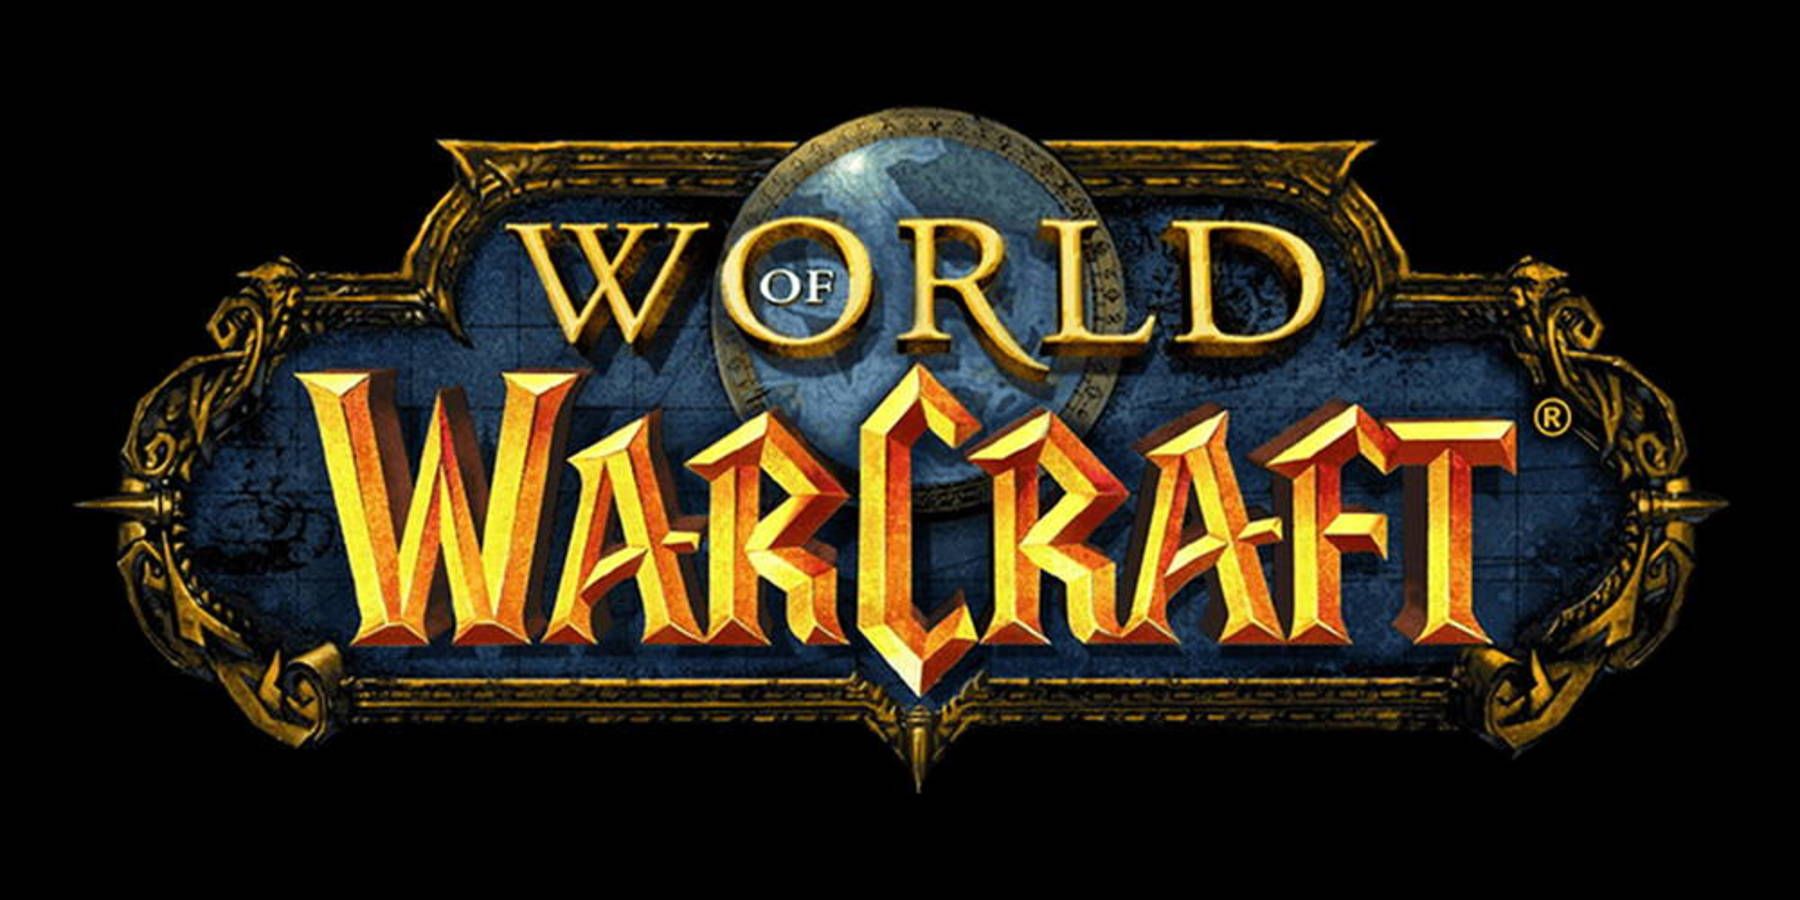 Warcraft mobilspil annulleret angiveligt